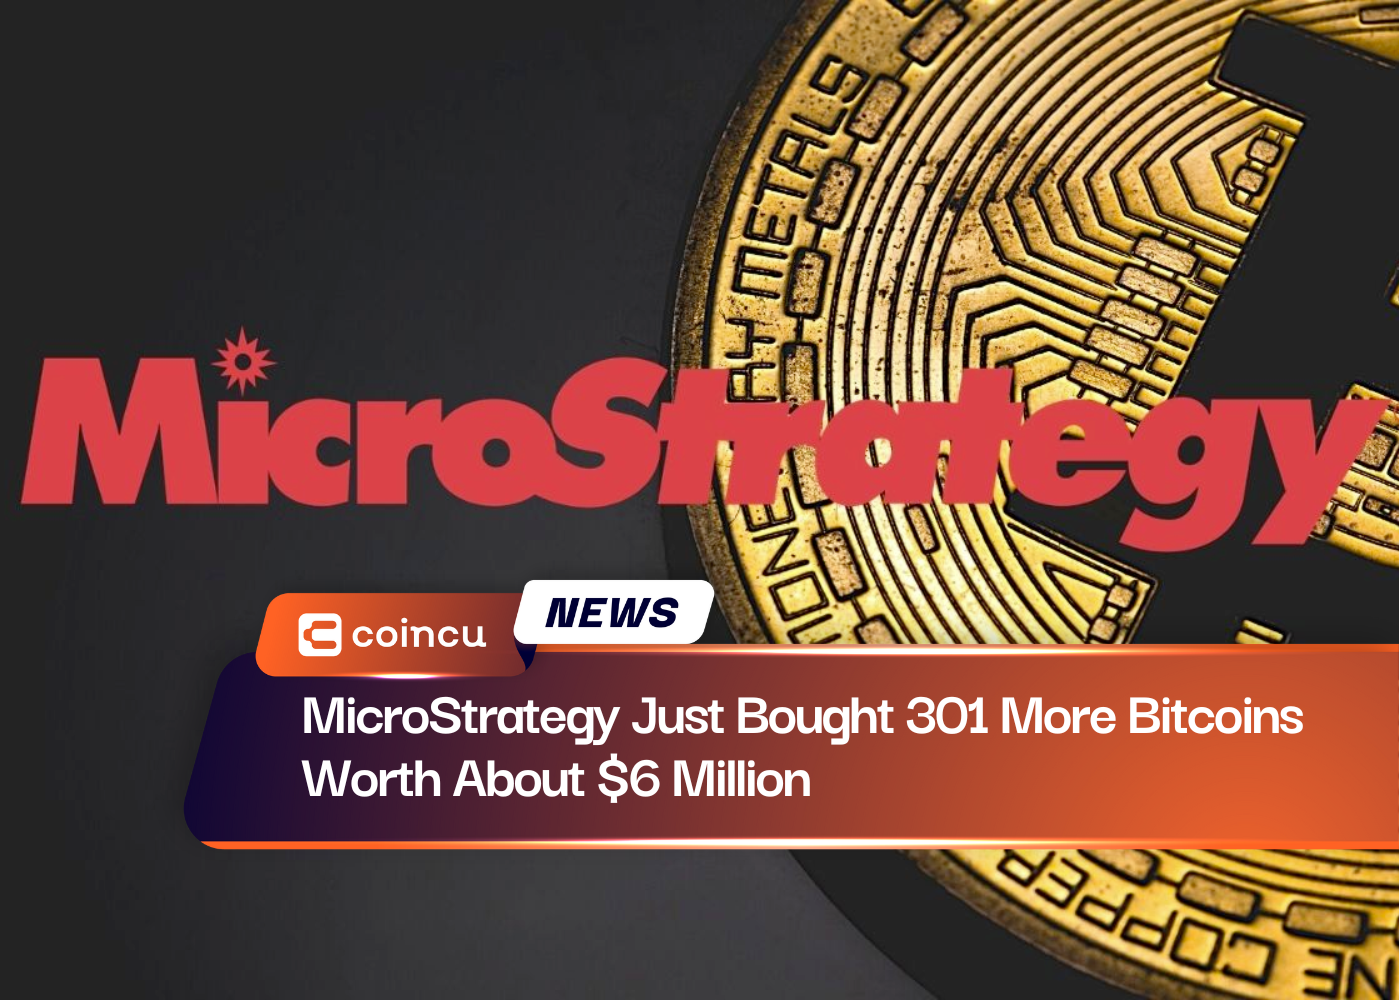 MicroStrategy acaba de comprar 301 Bitcoins más por valor de unos 6 millones de dólares